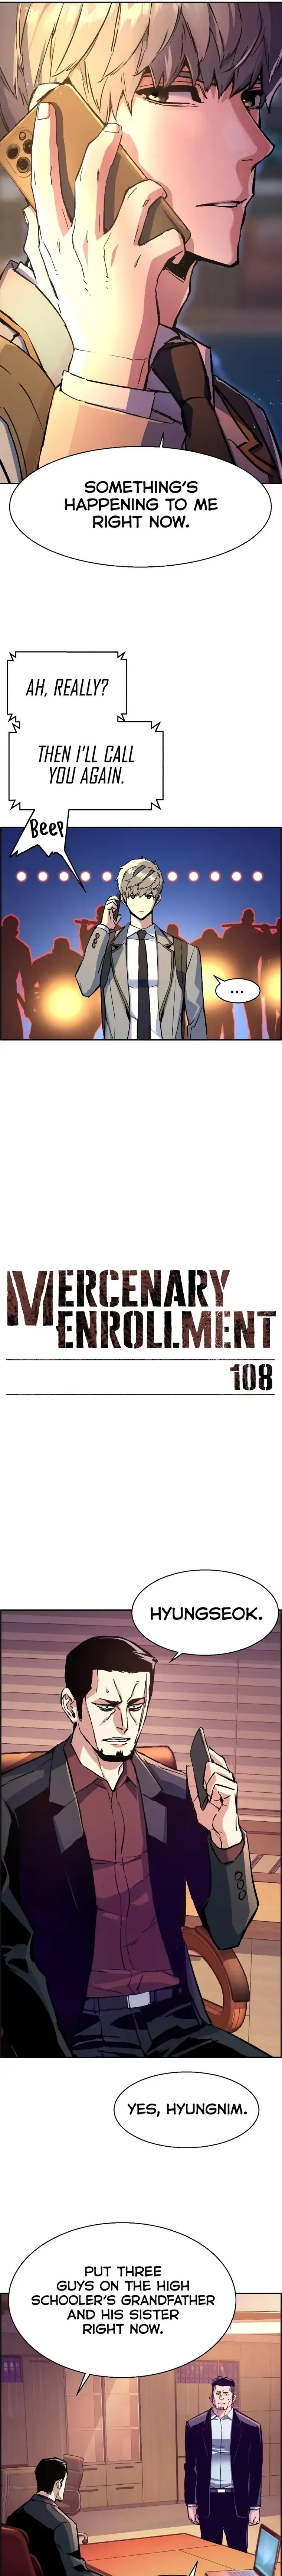 Mercenary Enrollment Webcomics